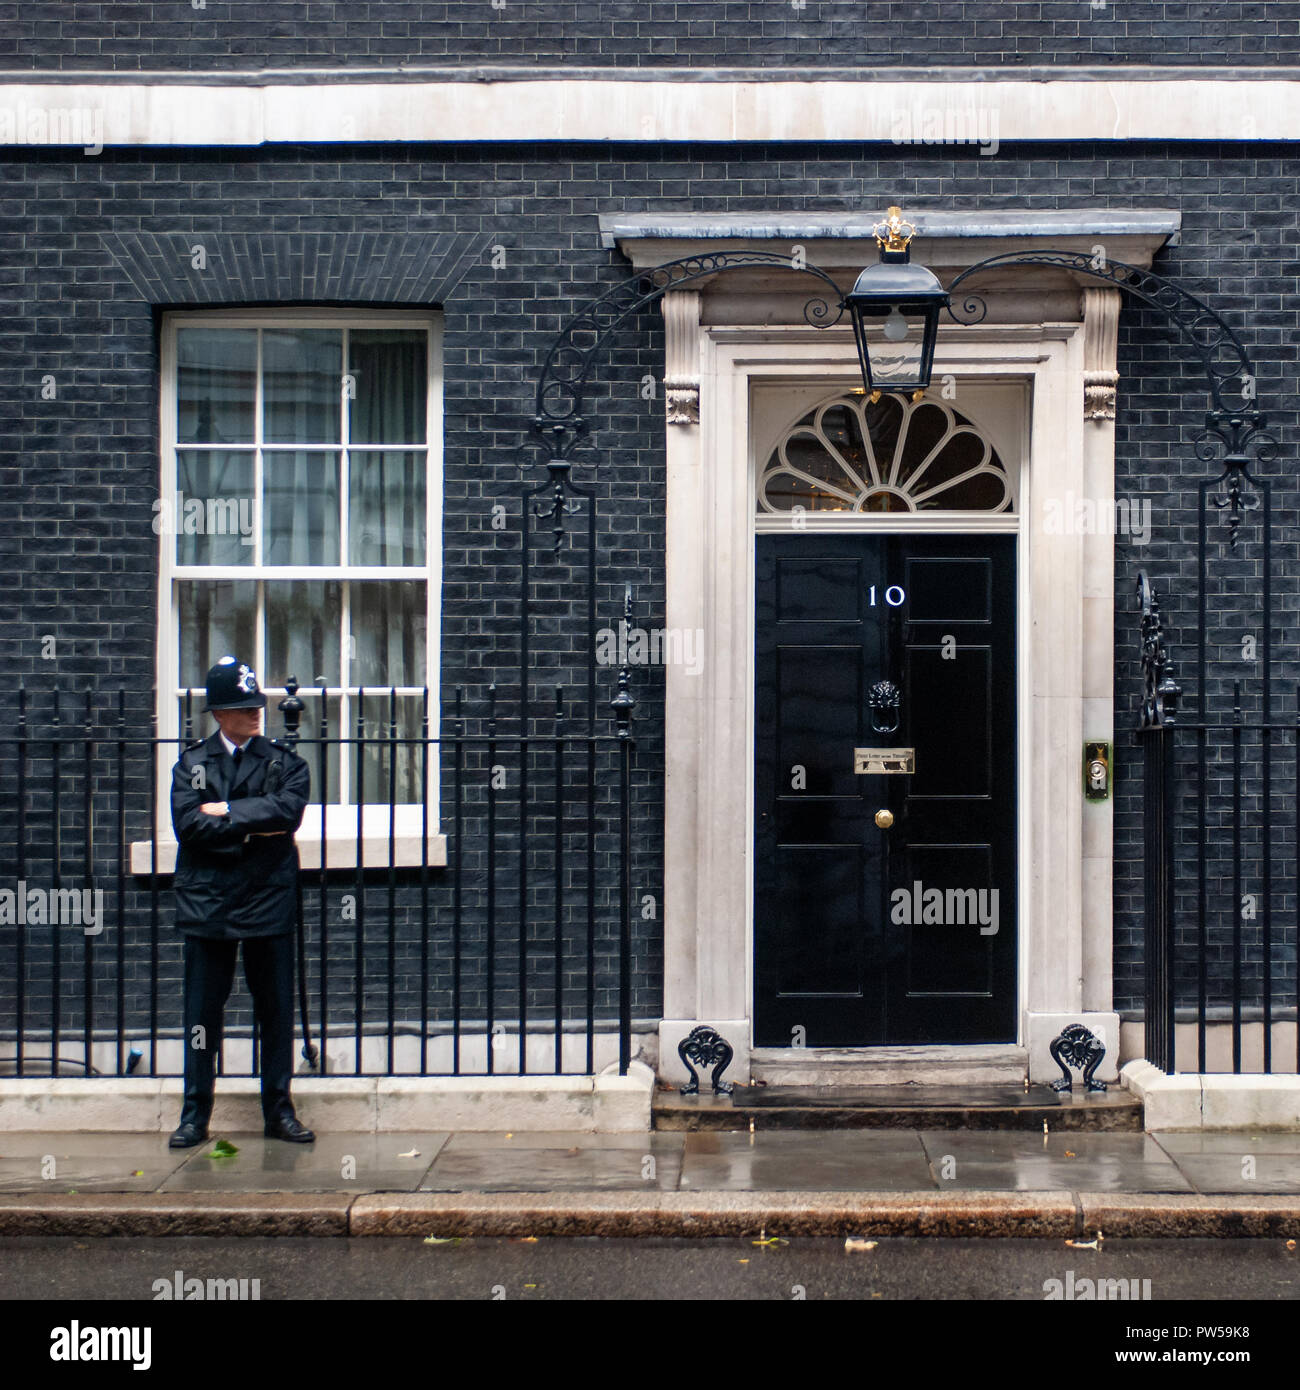 Londres, UK - OCT 16 : droit au carré d'un agent de police qui gardaient la porte d'entrée de 10 Downing Street à Londres le 16 septembre 2013 Banque D'Images